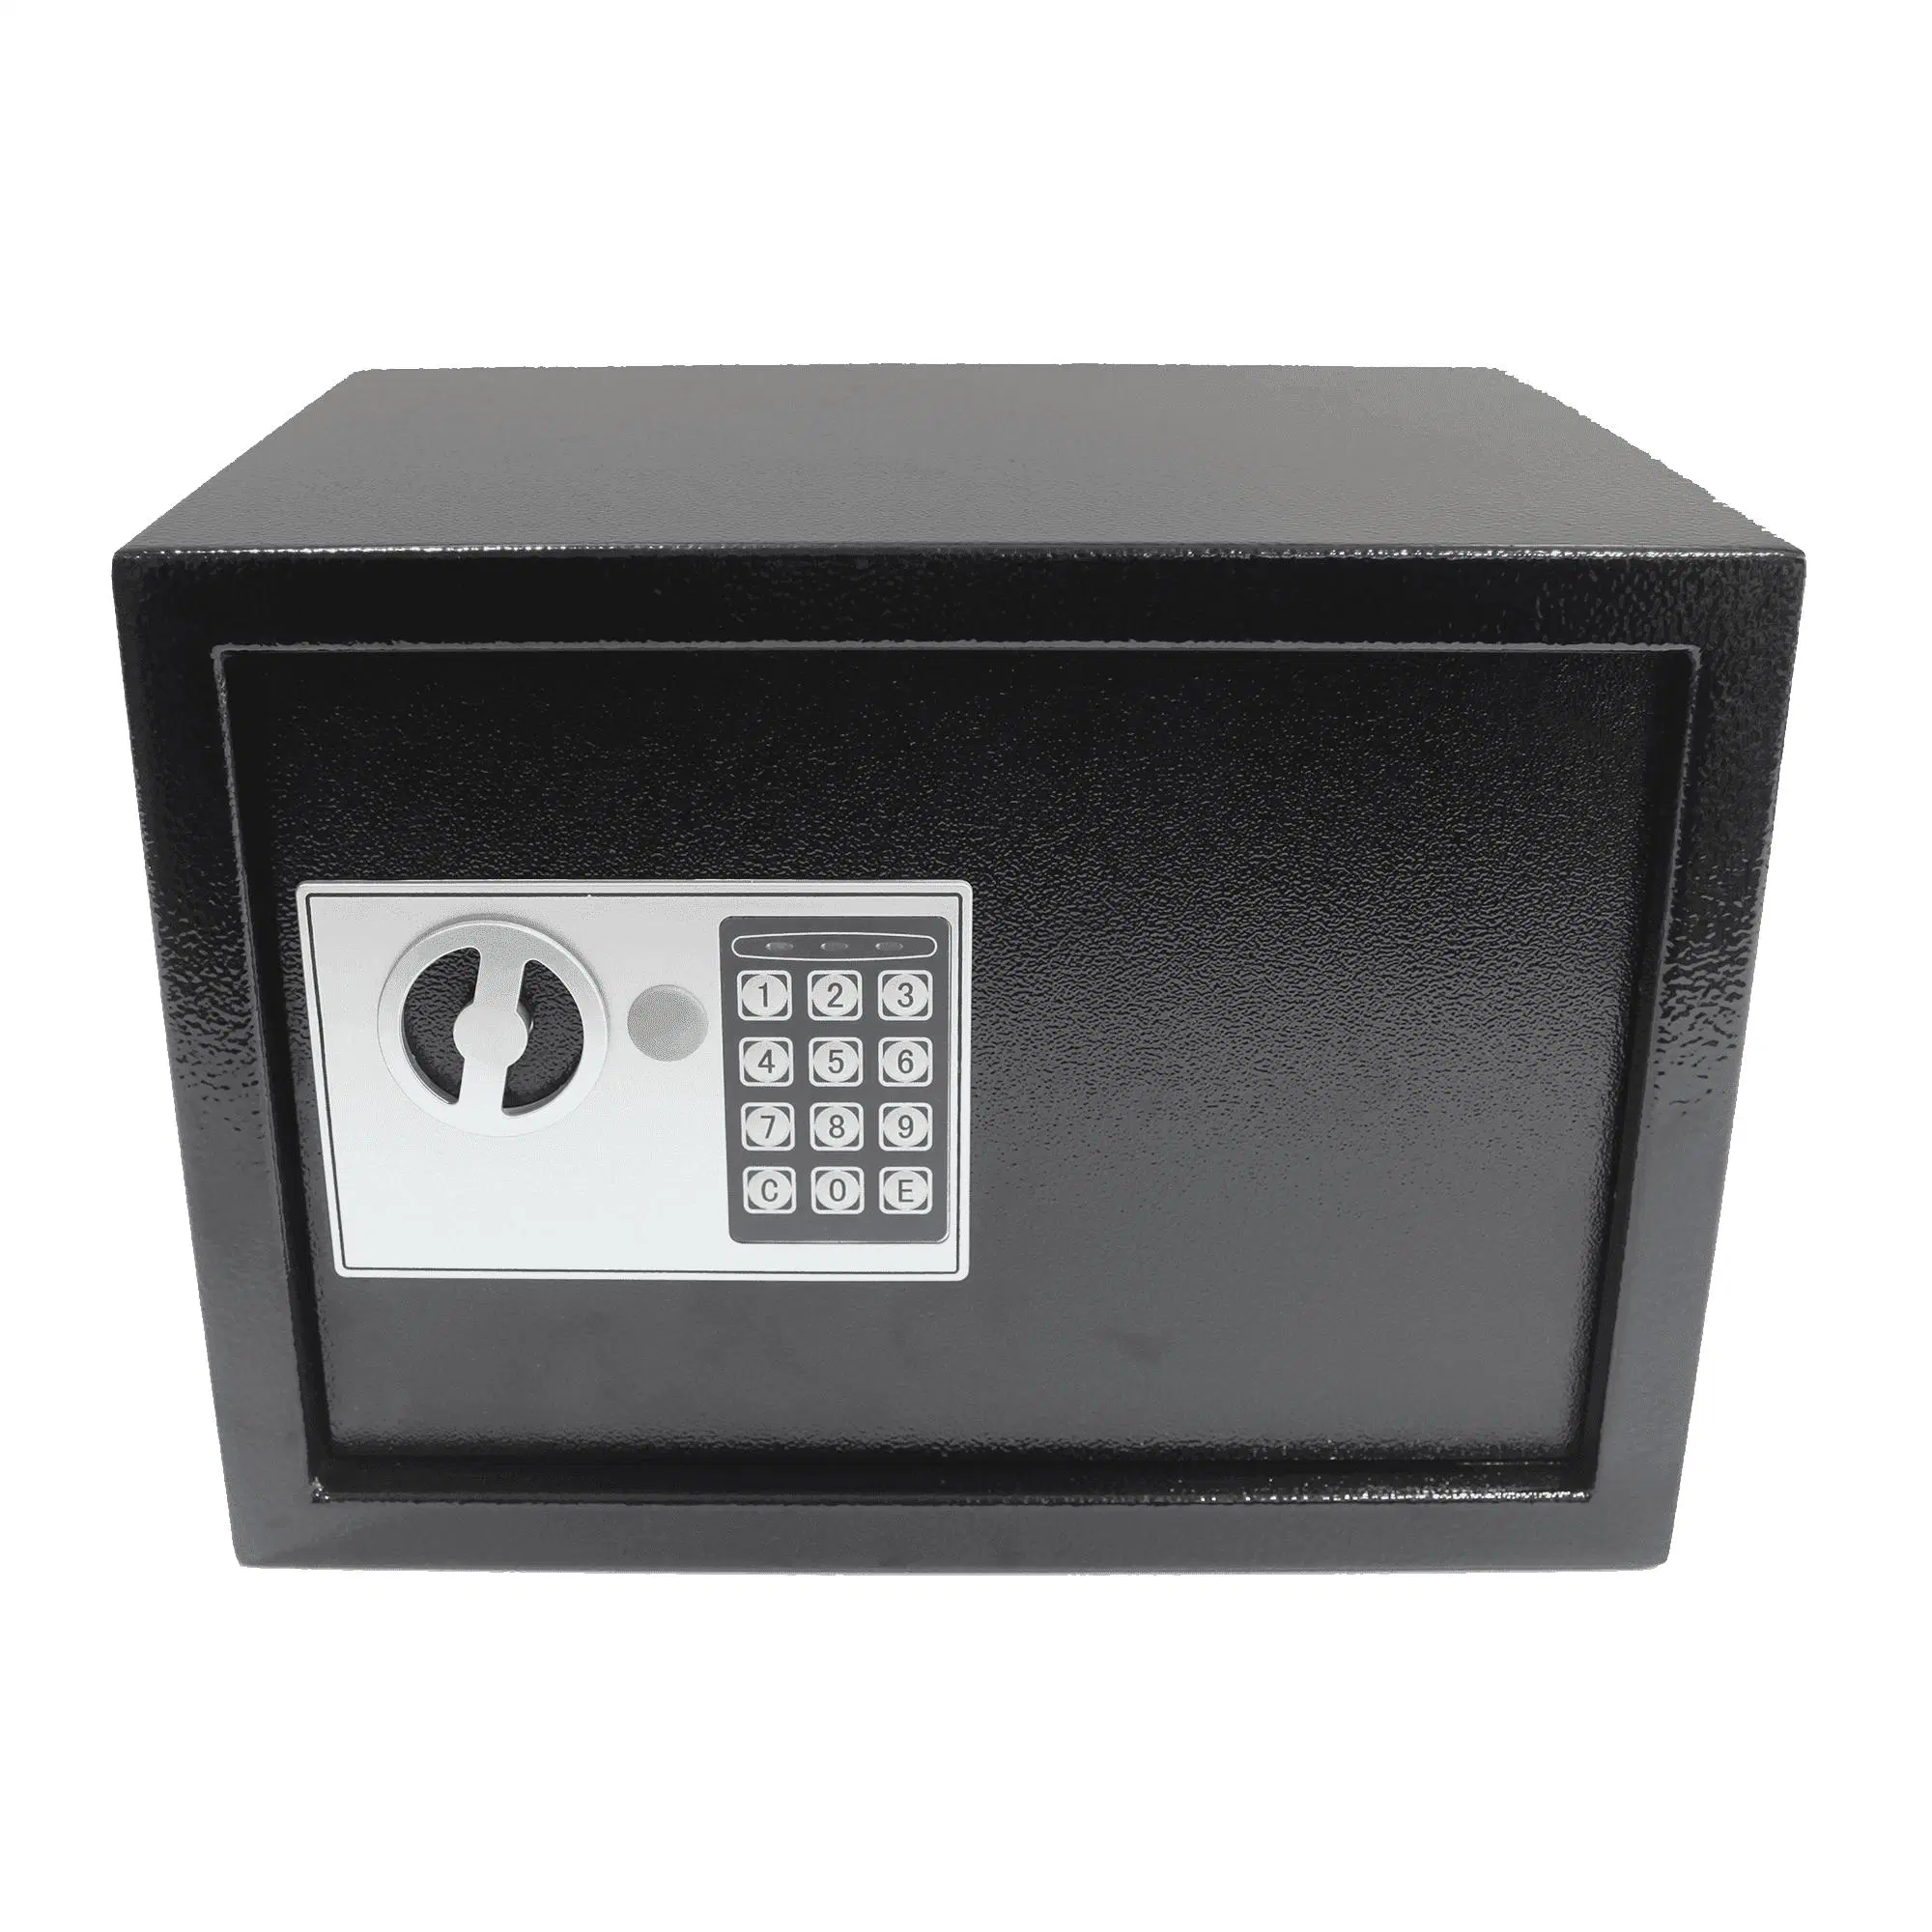 Caixa de segurança de chave longa com fechadura Cofre-chave Master Digital Fabricante seguro na China (USE-250EP)